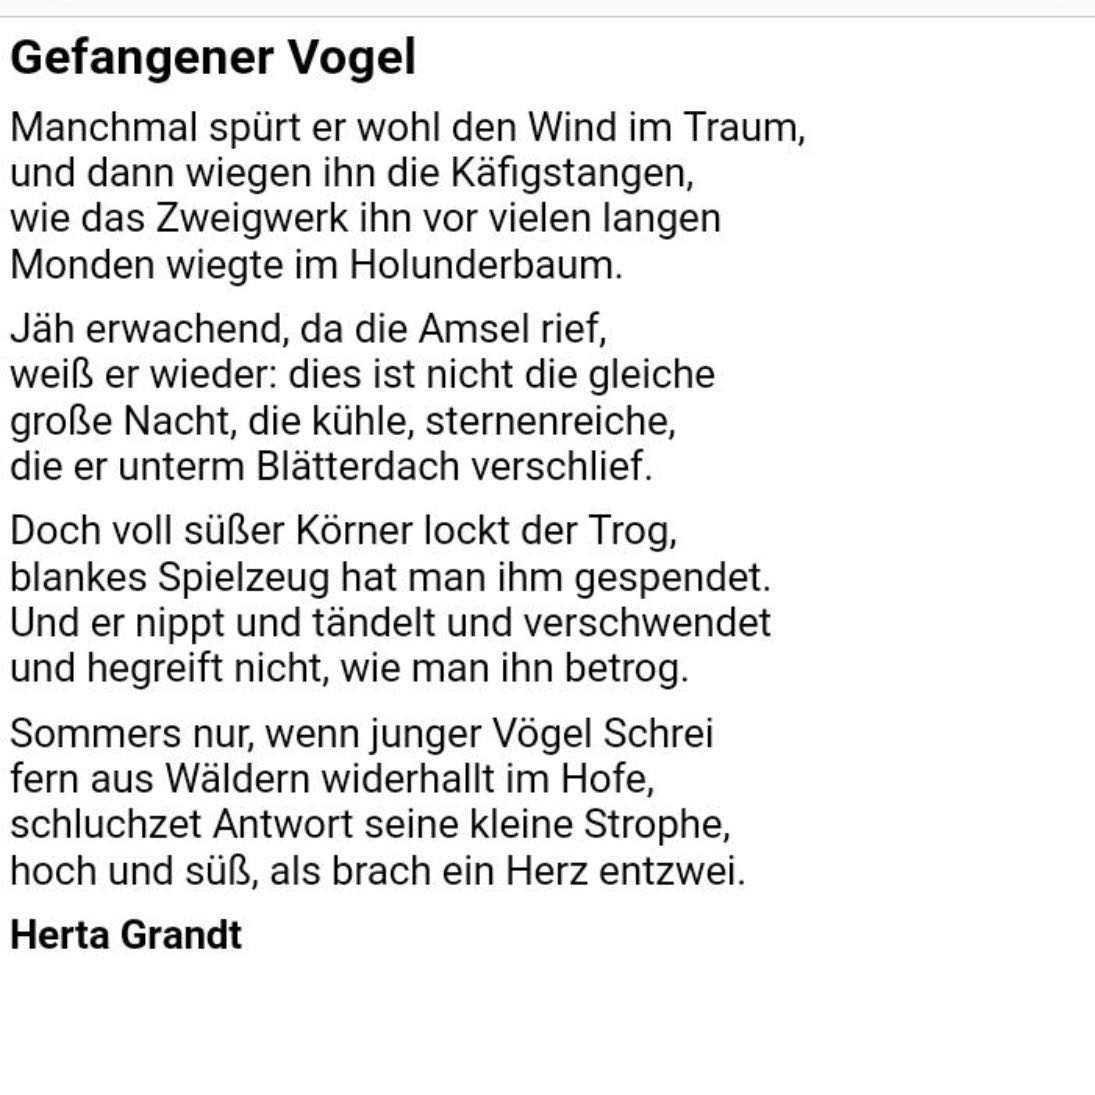 Gedichtinterpretation/Gefangener Vogel? (Schule, Deutsch, Gedicht)